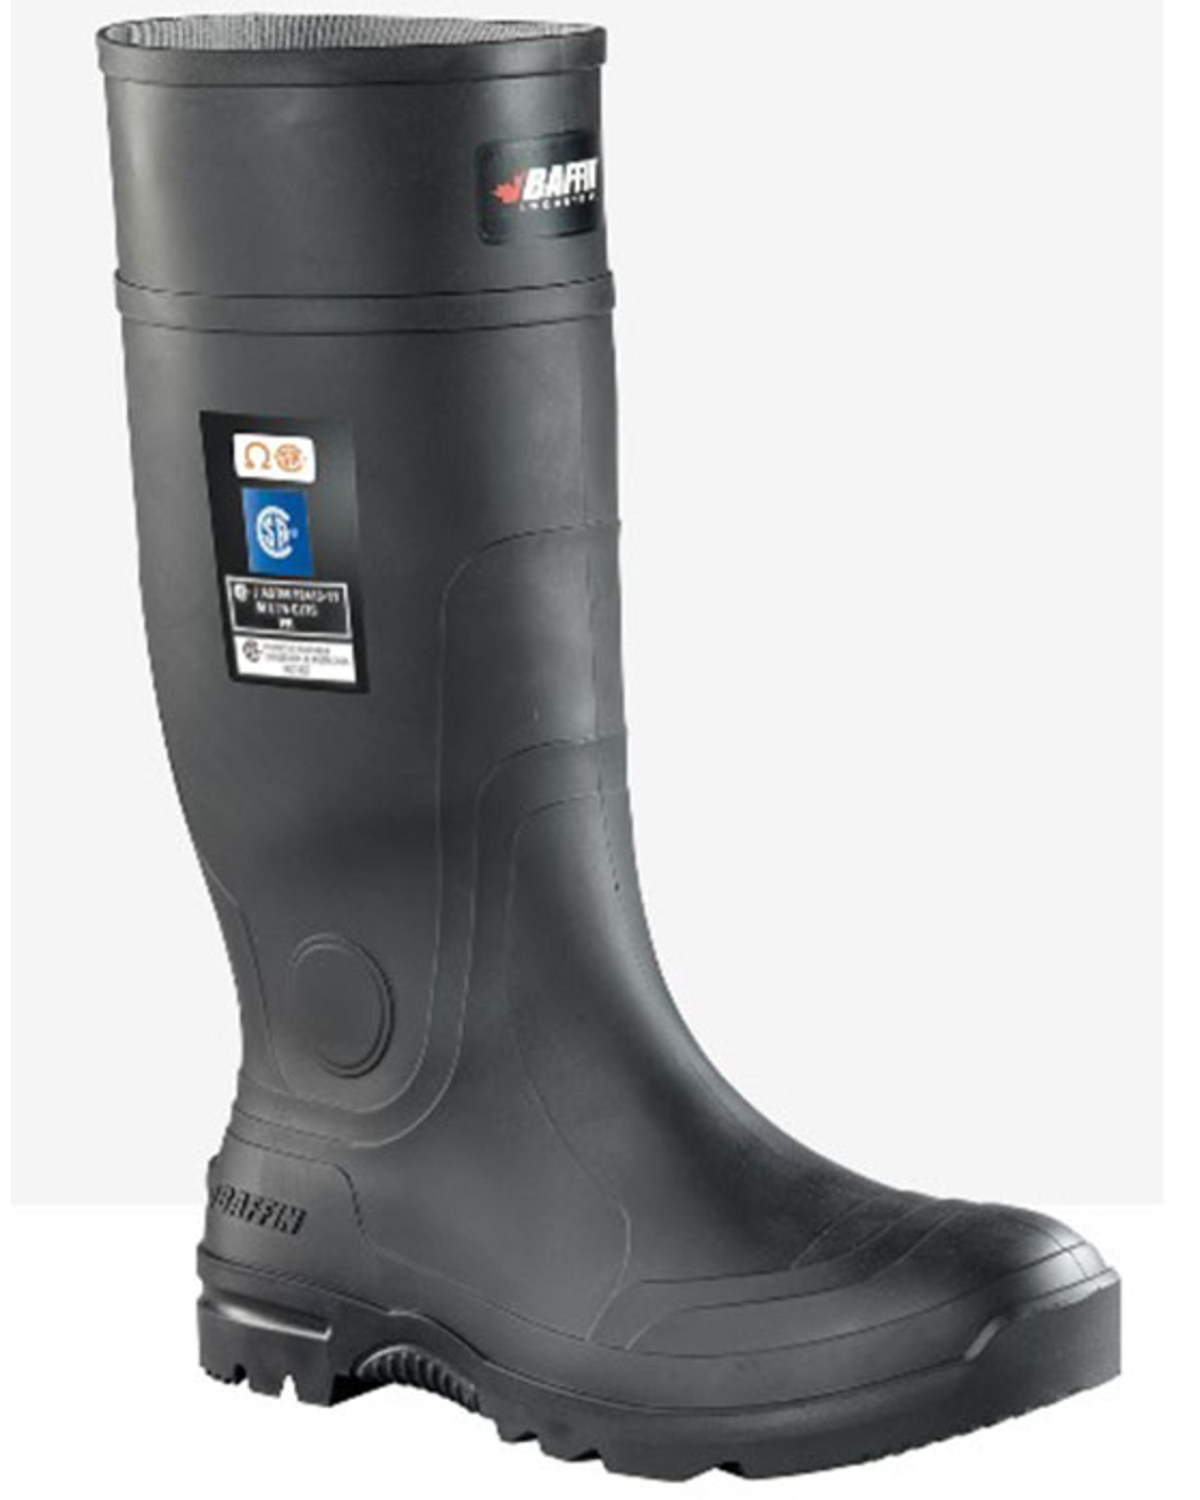 Baffin Men's Blackhawk (Toe) Waterproof Rubber Boots - Steel Toe